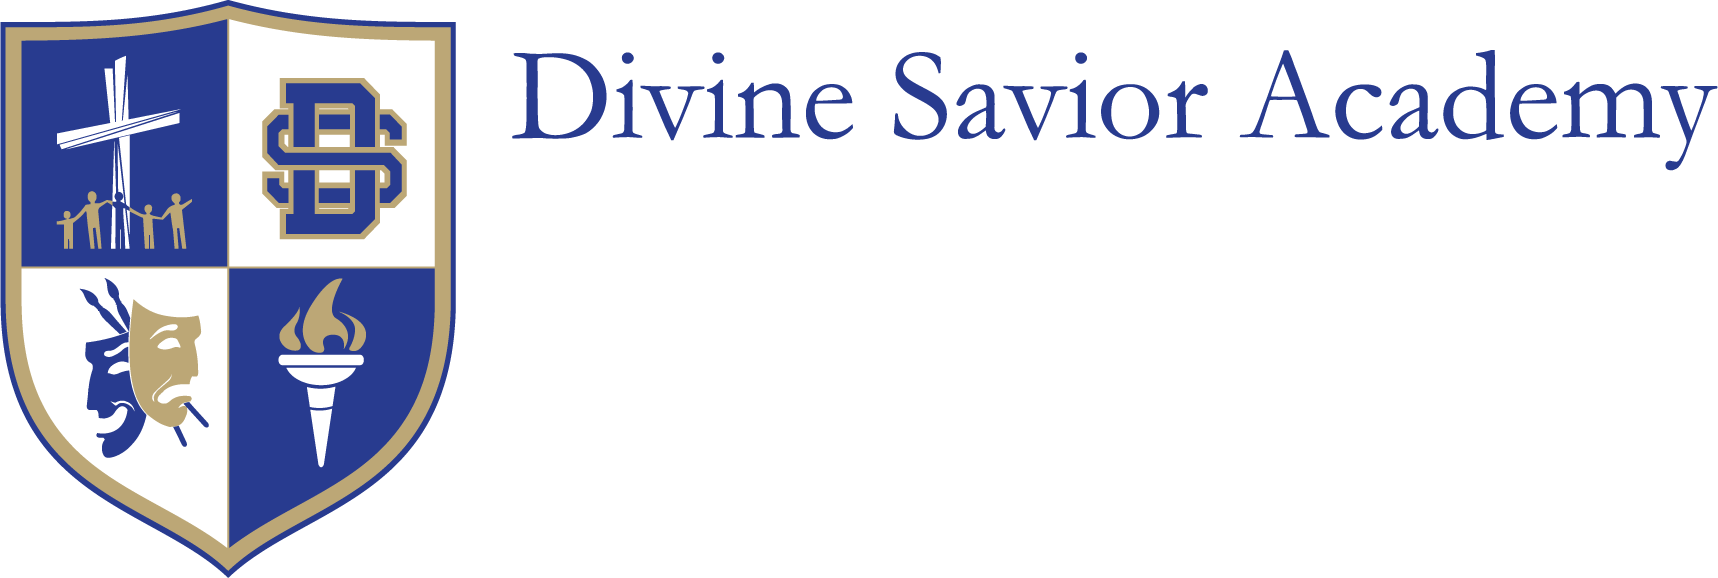 Divine Savior Academy - Sienna campus desktop logo